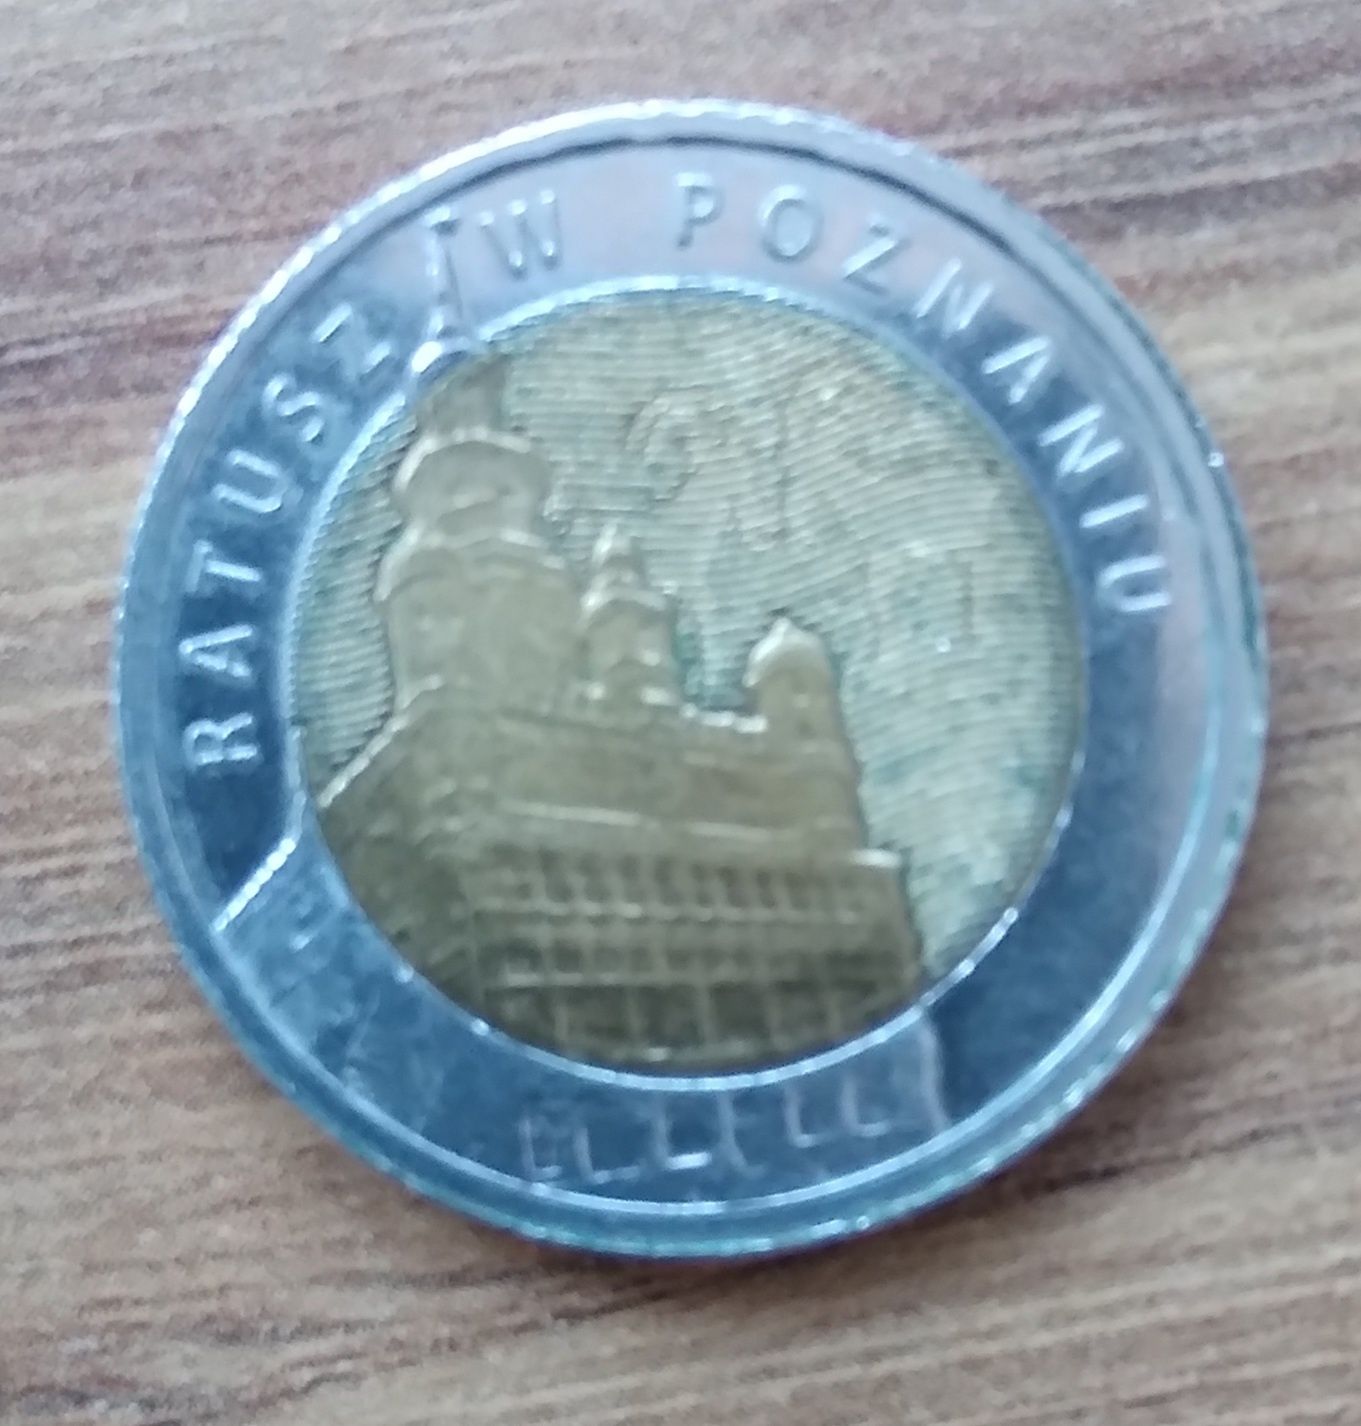 5 złotych z Ratuszem w Poznaniu kolekcjonerskie monety